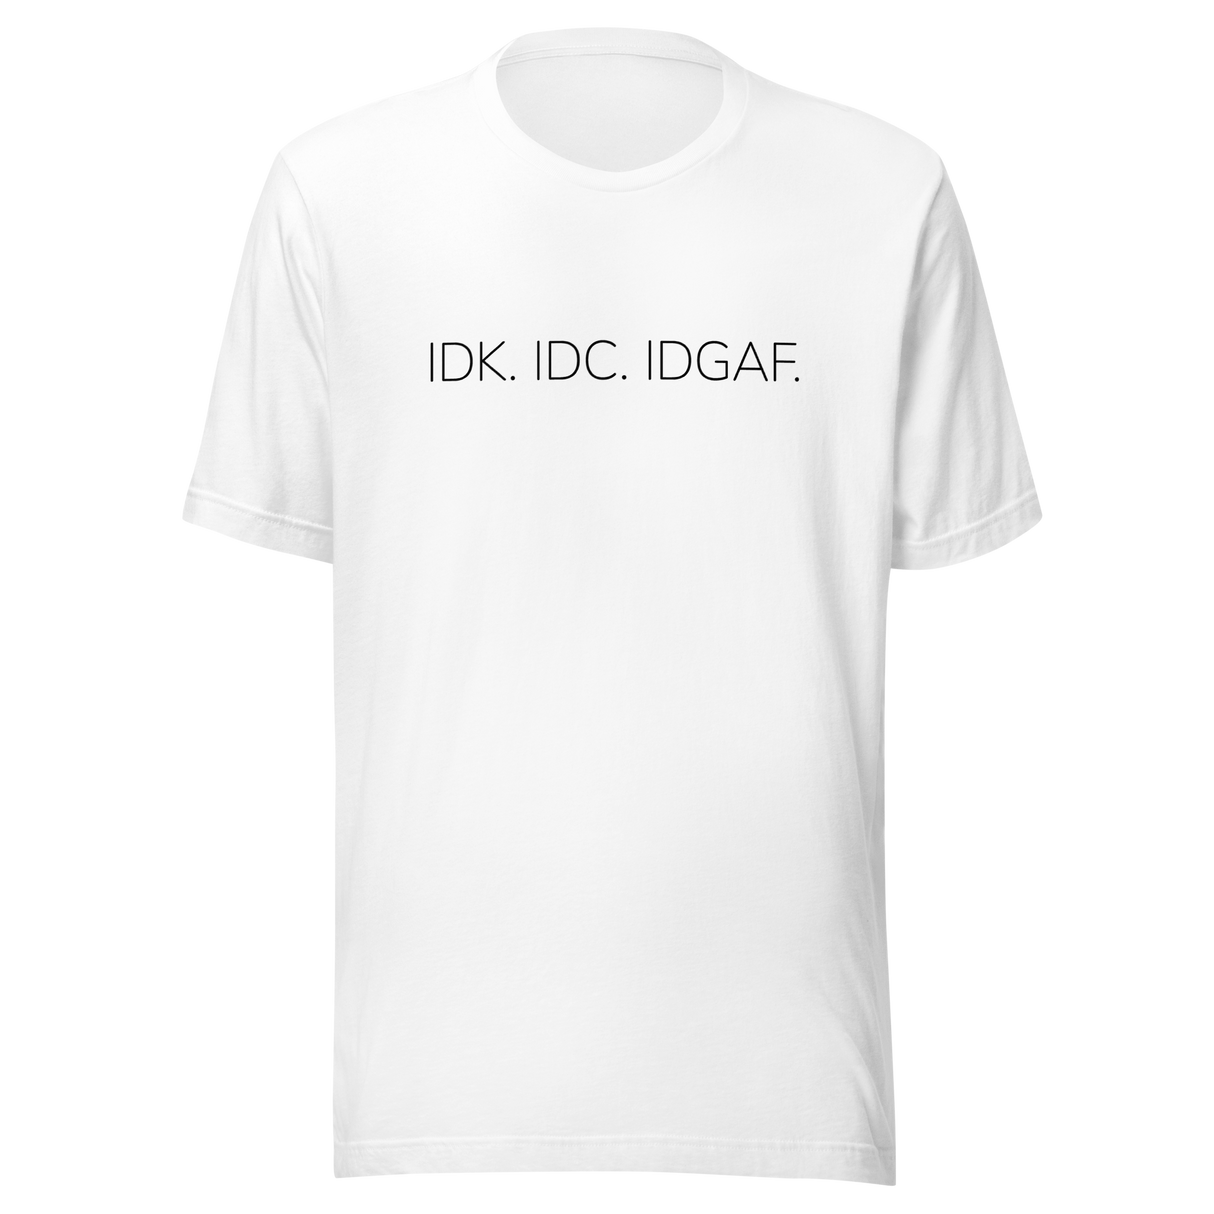 Idk. Idc. Idgaf. - IDK Tee - IDC T-Shirt - IDGAF Tee - Texting T-Shirt - Dont Care Tee